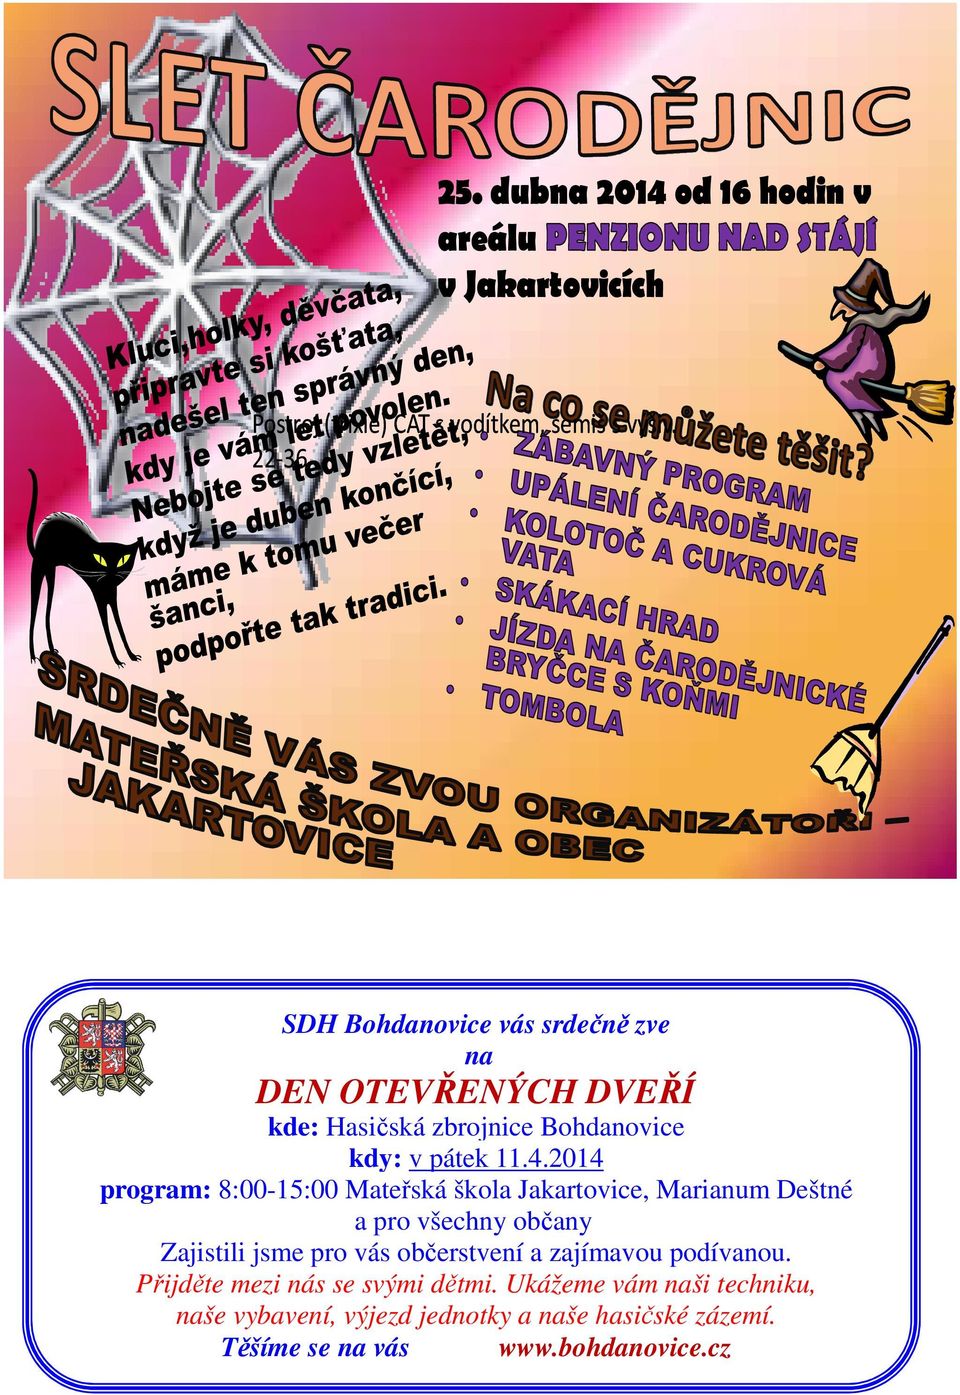 2014 program: 8:00-15:00 Mateřská škola Jakartovice, Marianum Deštné a pro všechny občany Zajistili jsme pro vás občerstvení a